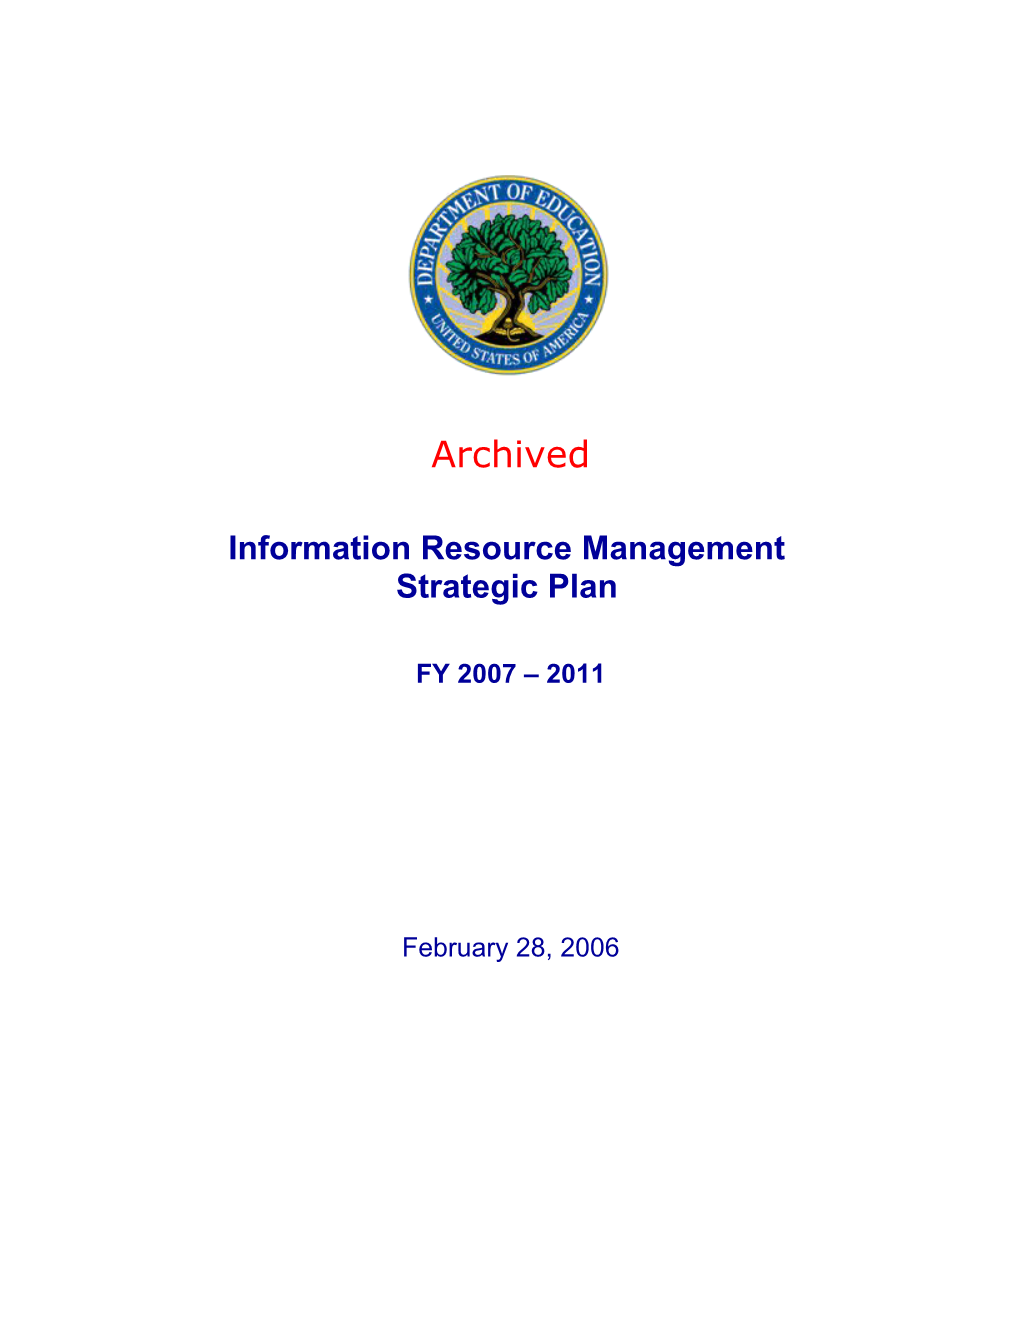 Information Resource Management Strategic Plan